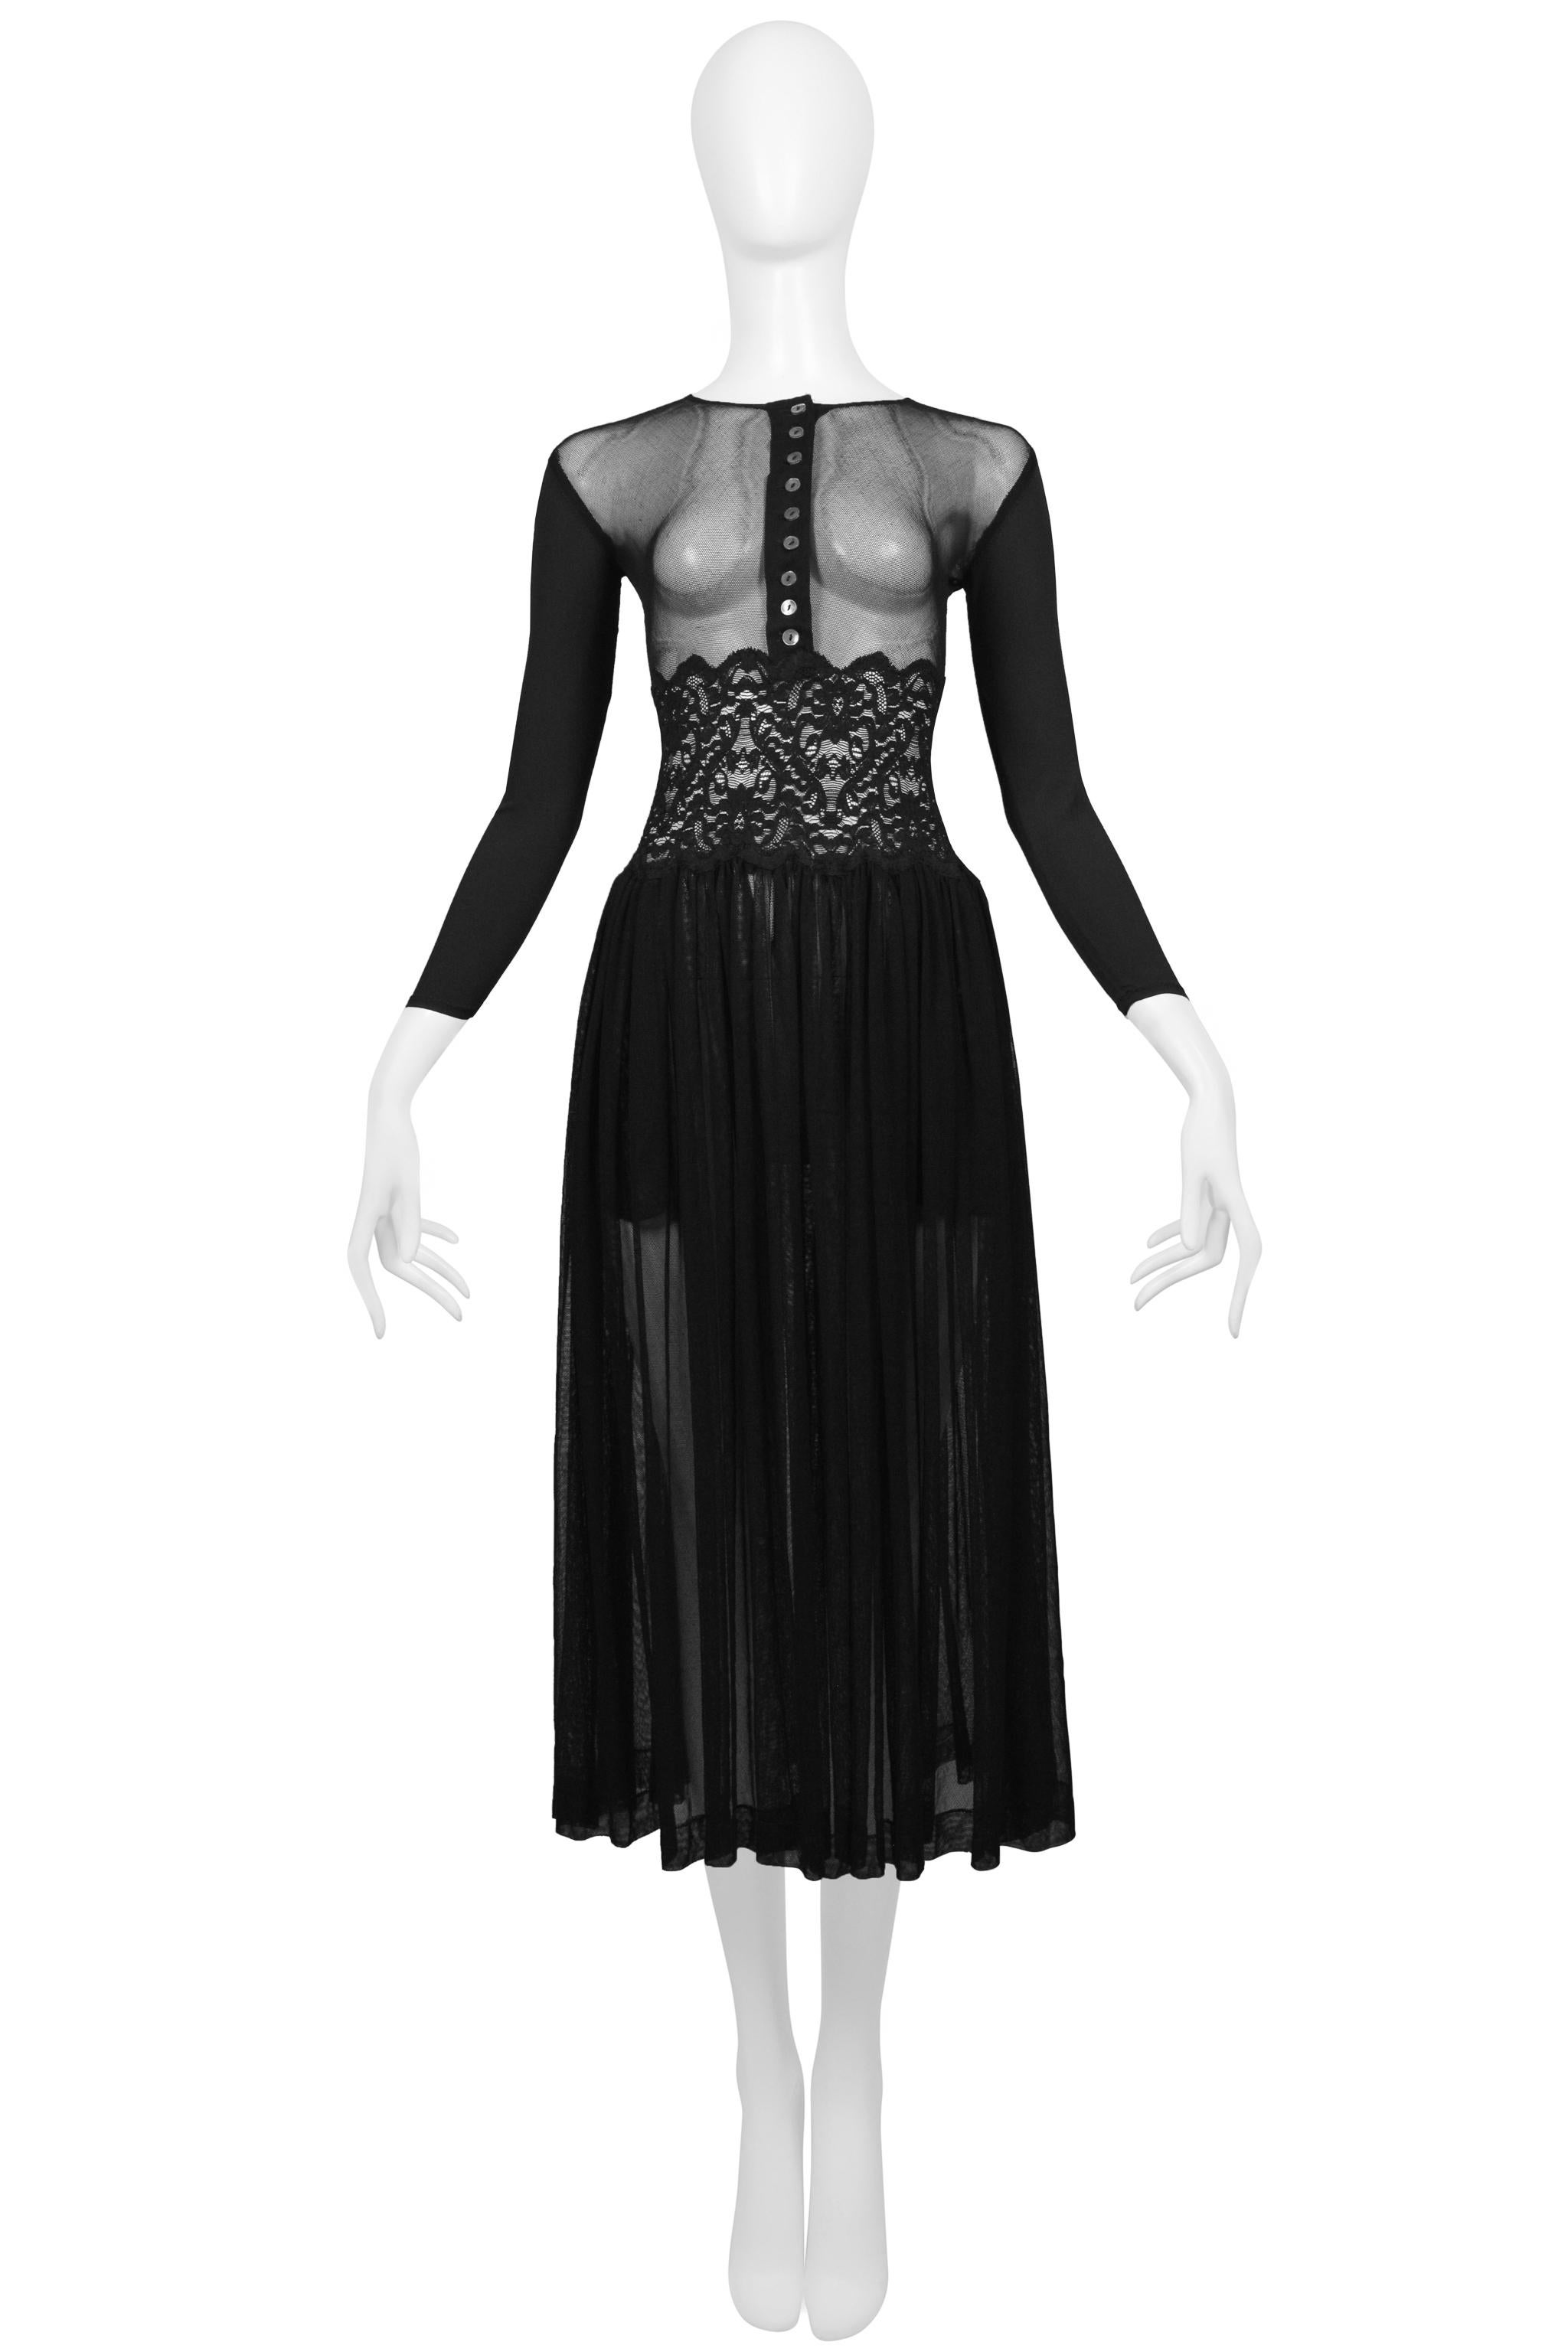 Resurrection Vintage est heureux de vous proposer une robe vintage Jean Paul Gaultier en maille noire avec des manches unies, un corsage transparent boutonné sur le devant, un détail de dentelle à la taille, et une jupe froncée.
* Jean Paul